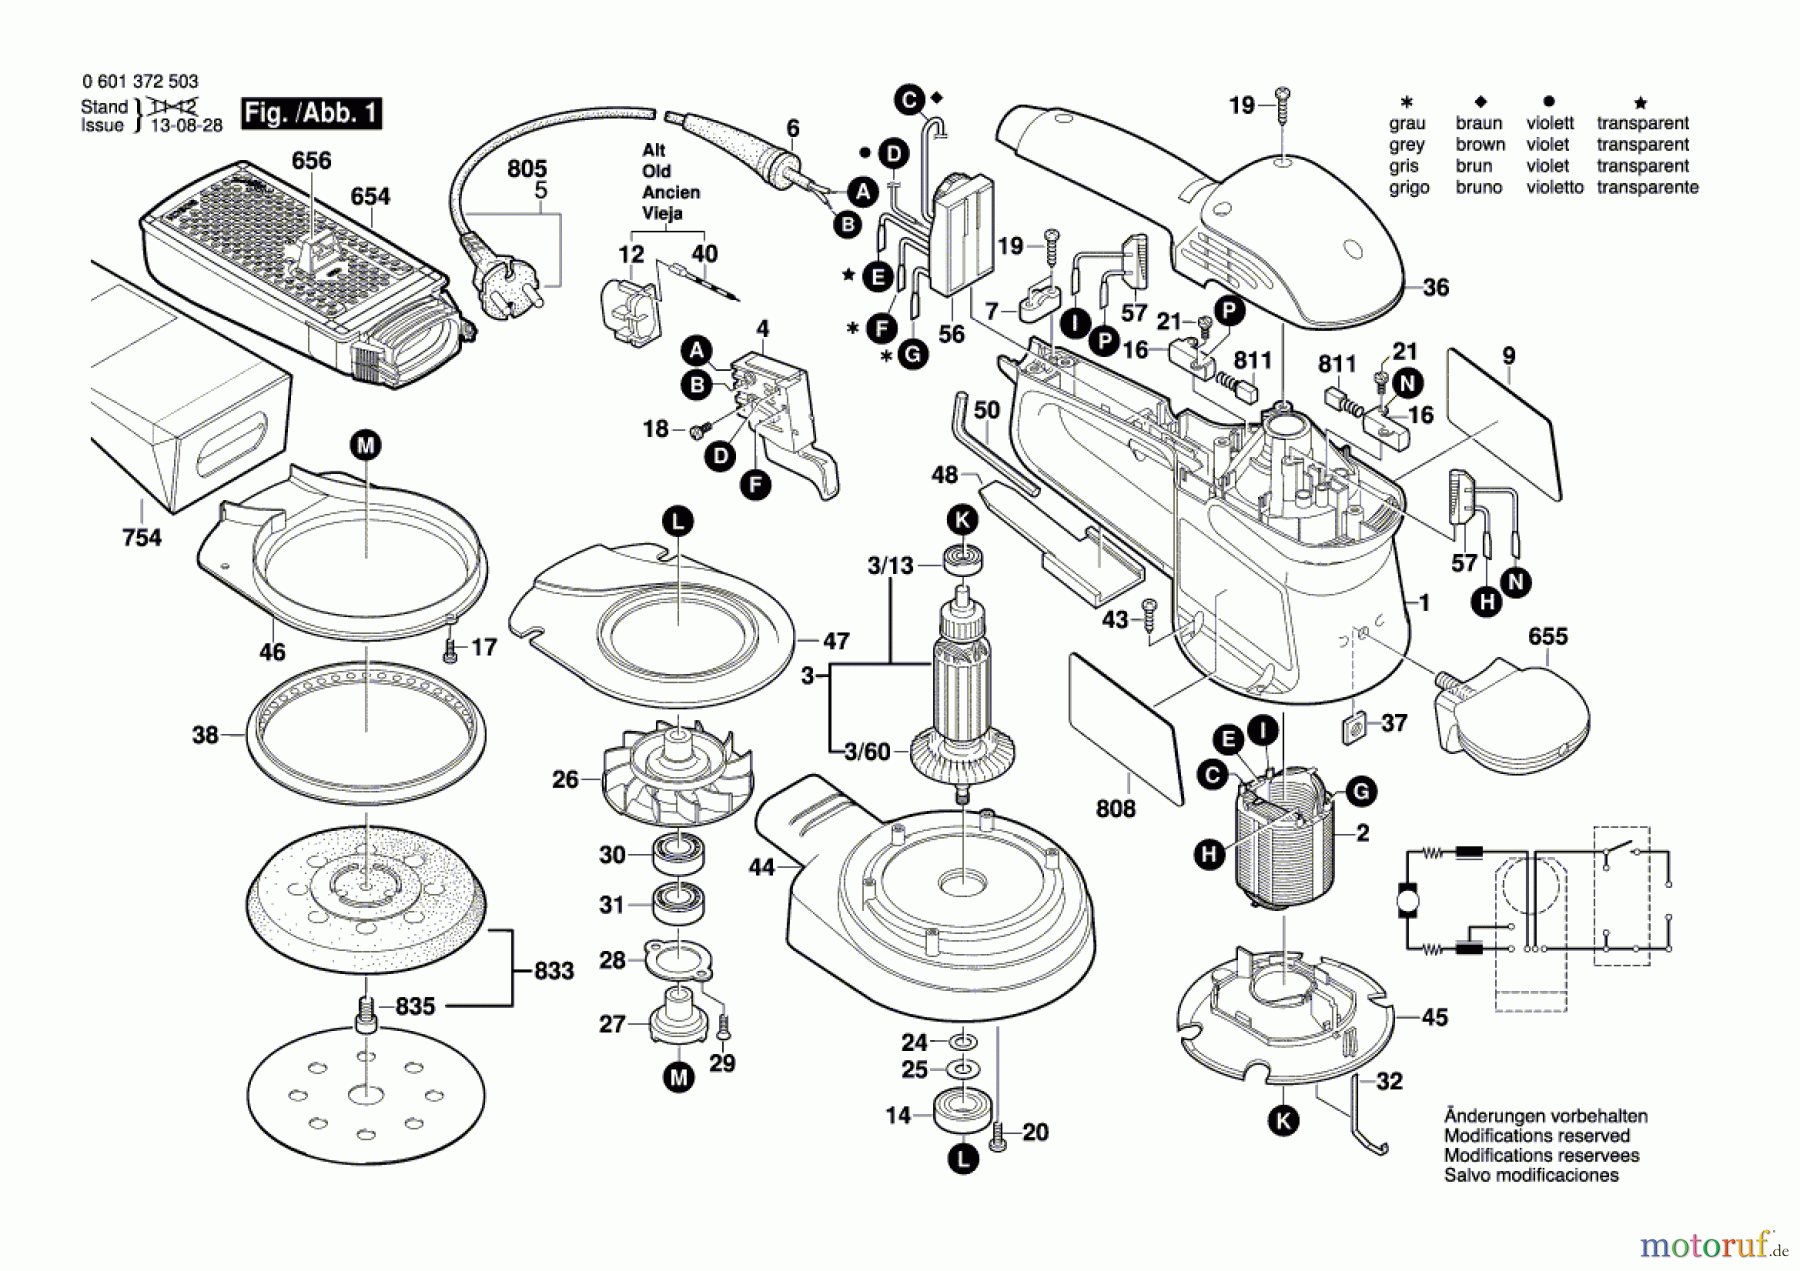  Bosch Werkzeug Exzenterschleifer GEX 125 AC Seite 1